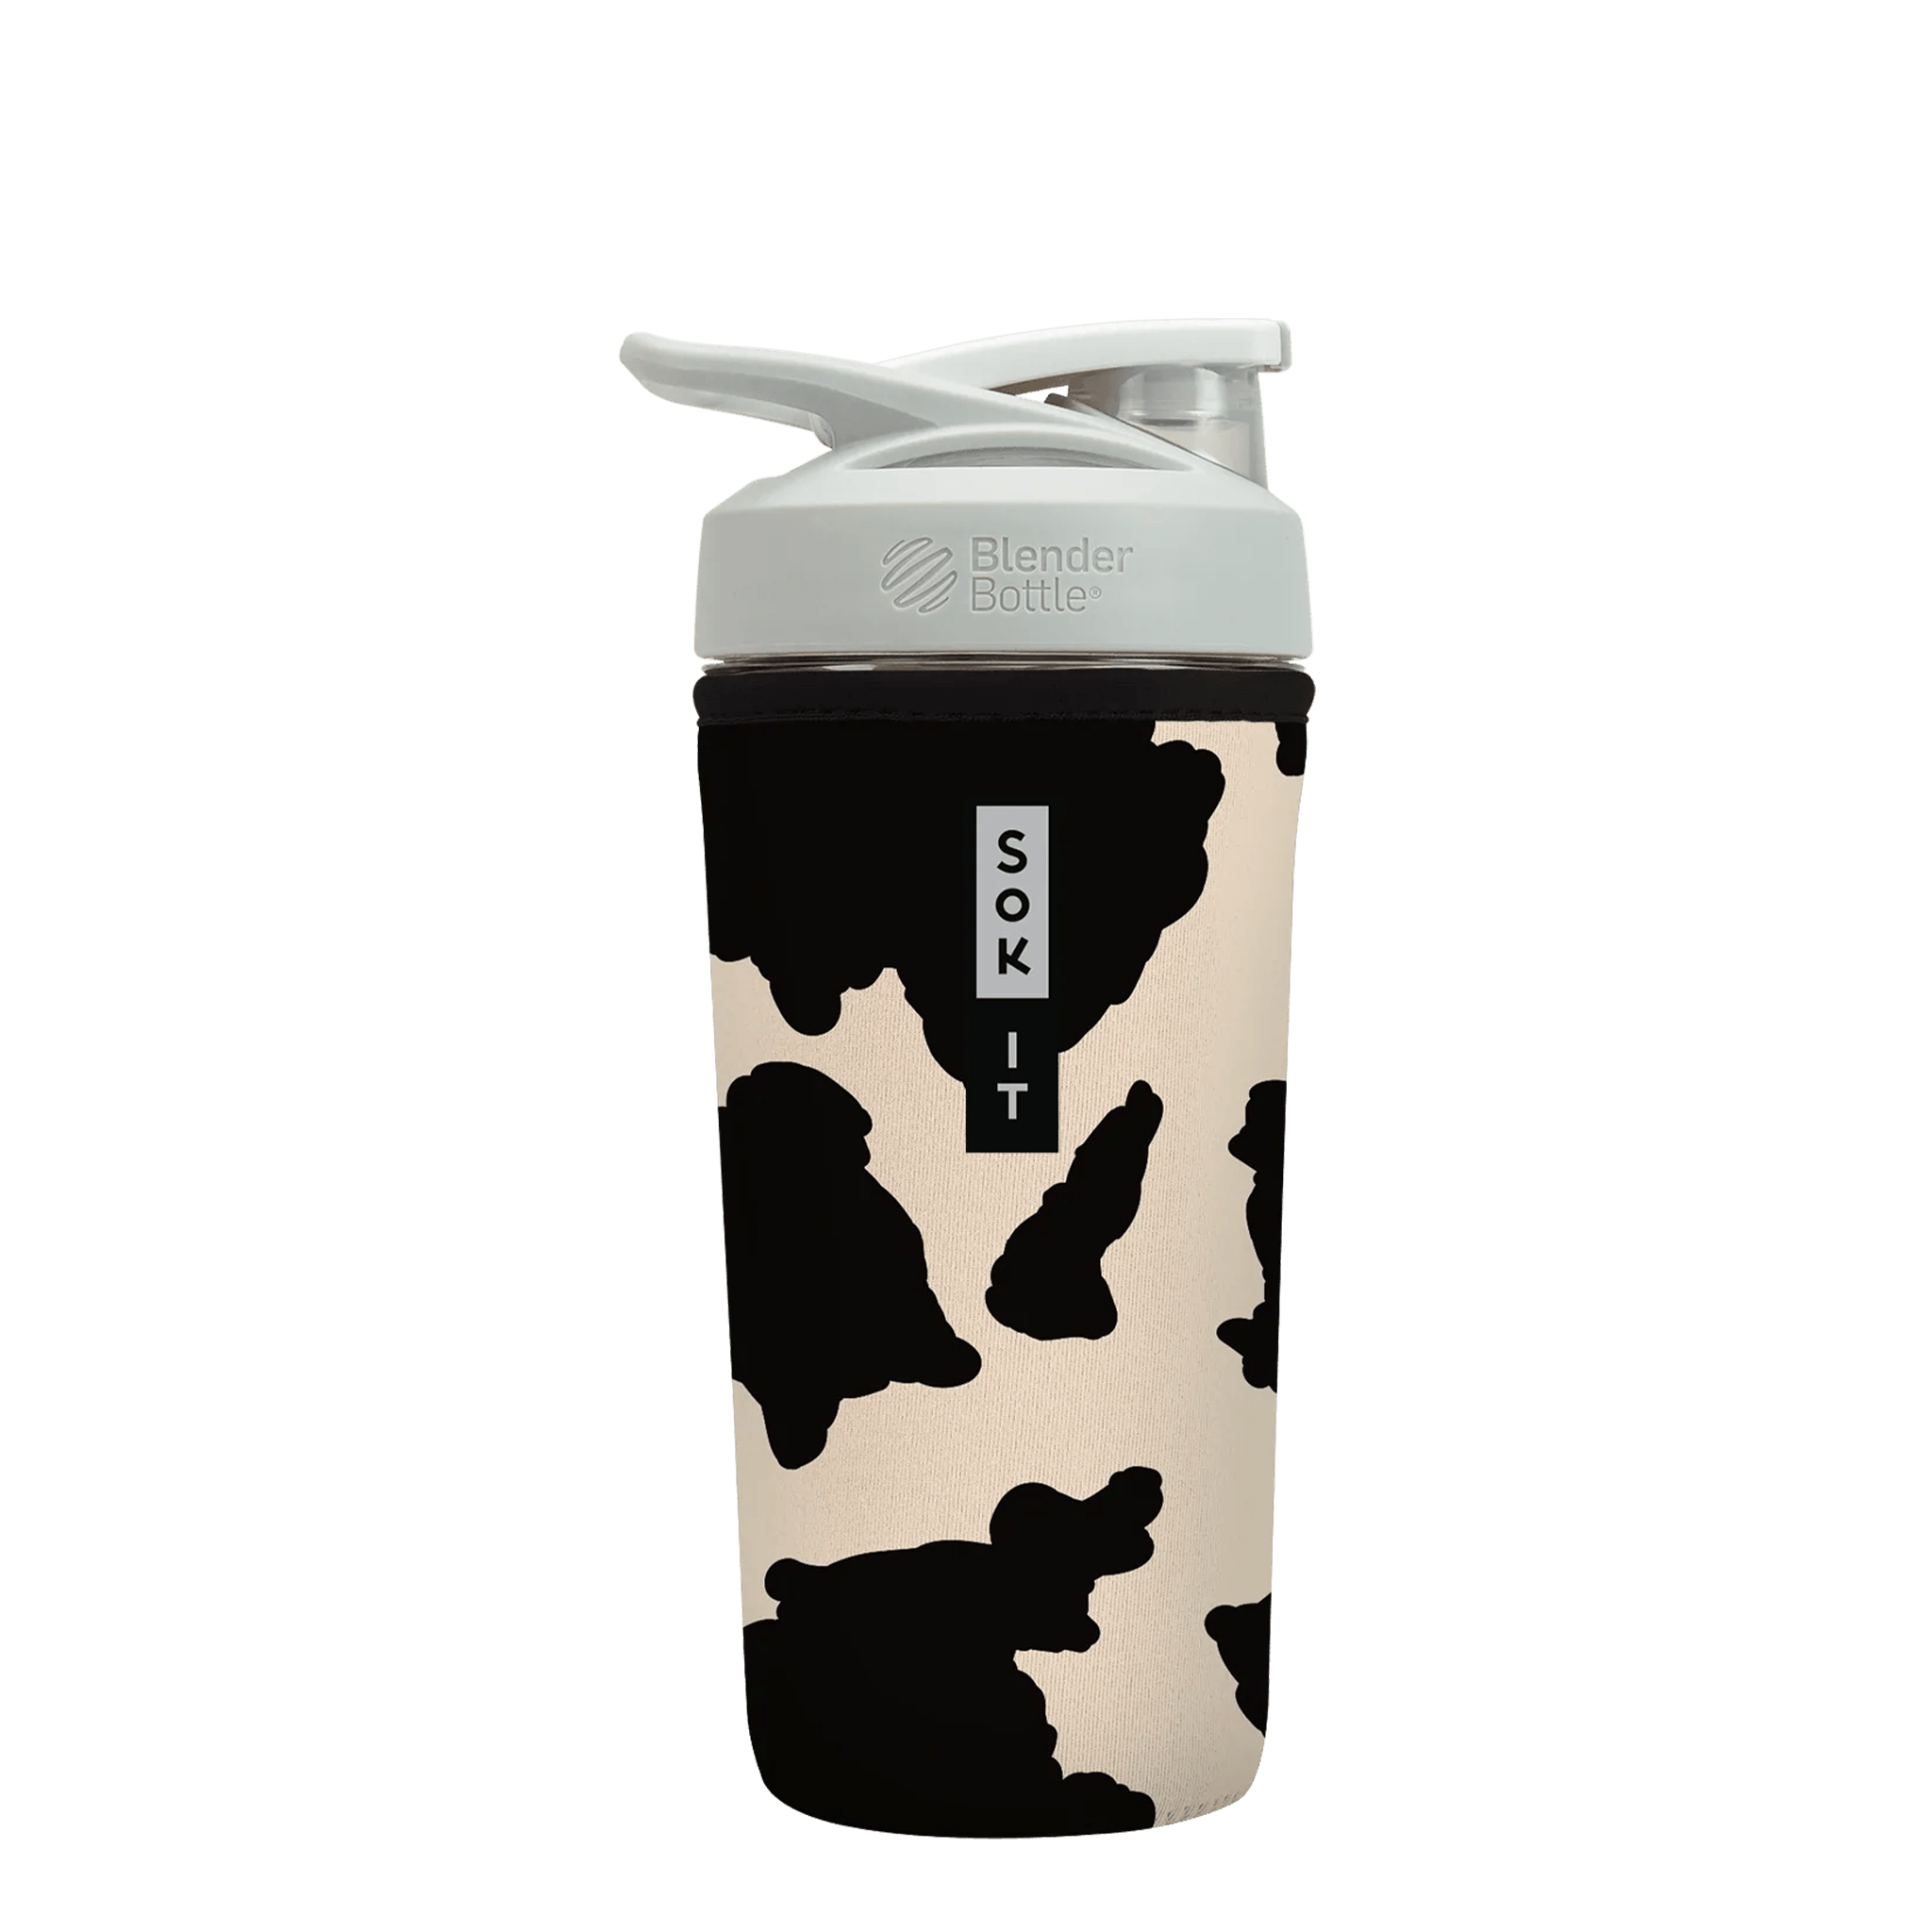 BotlSok - Blender Bottle Cow Print 28oz